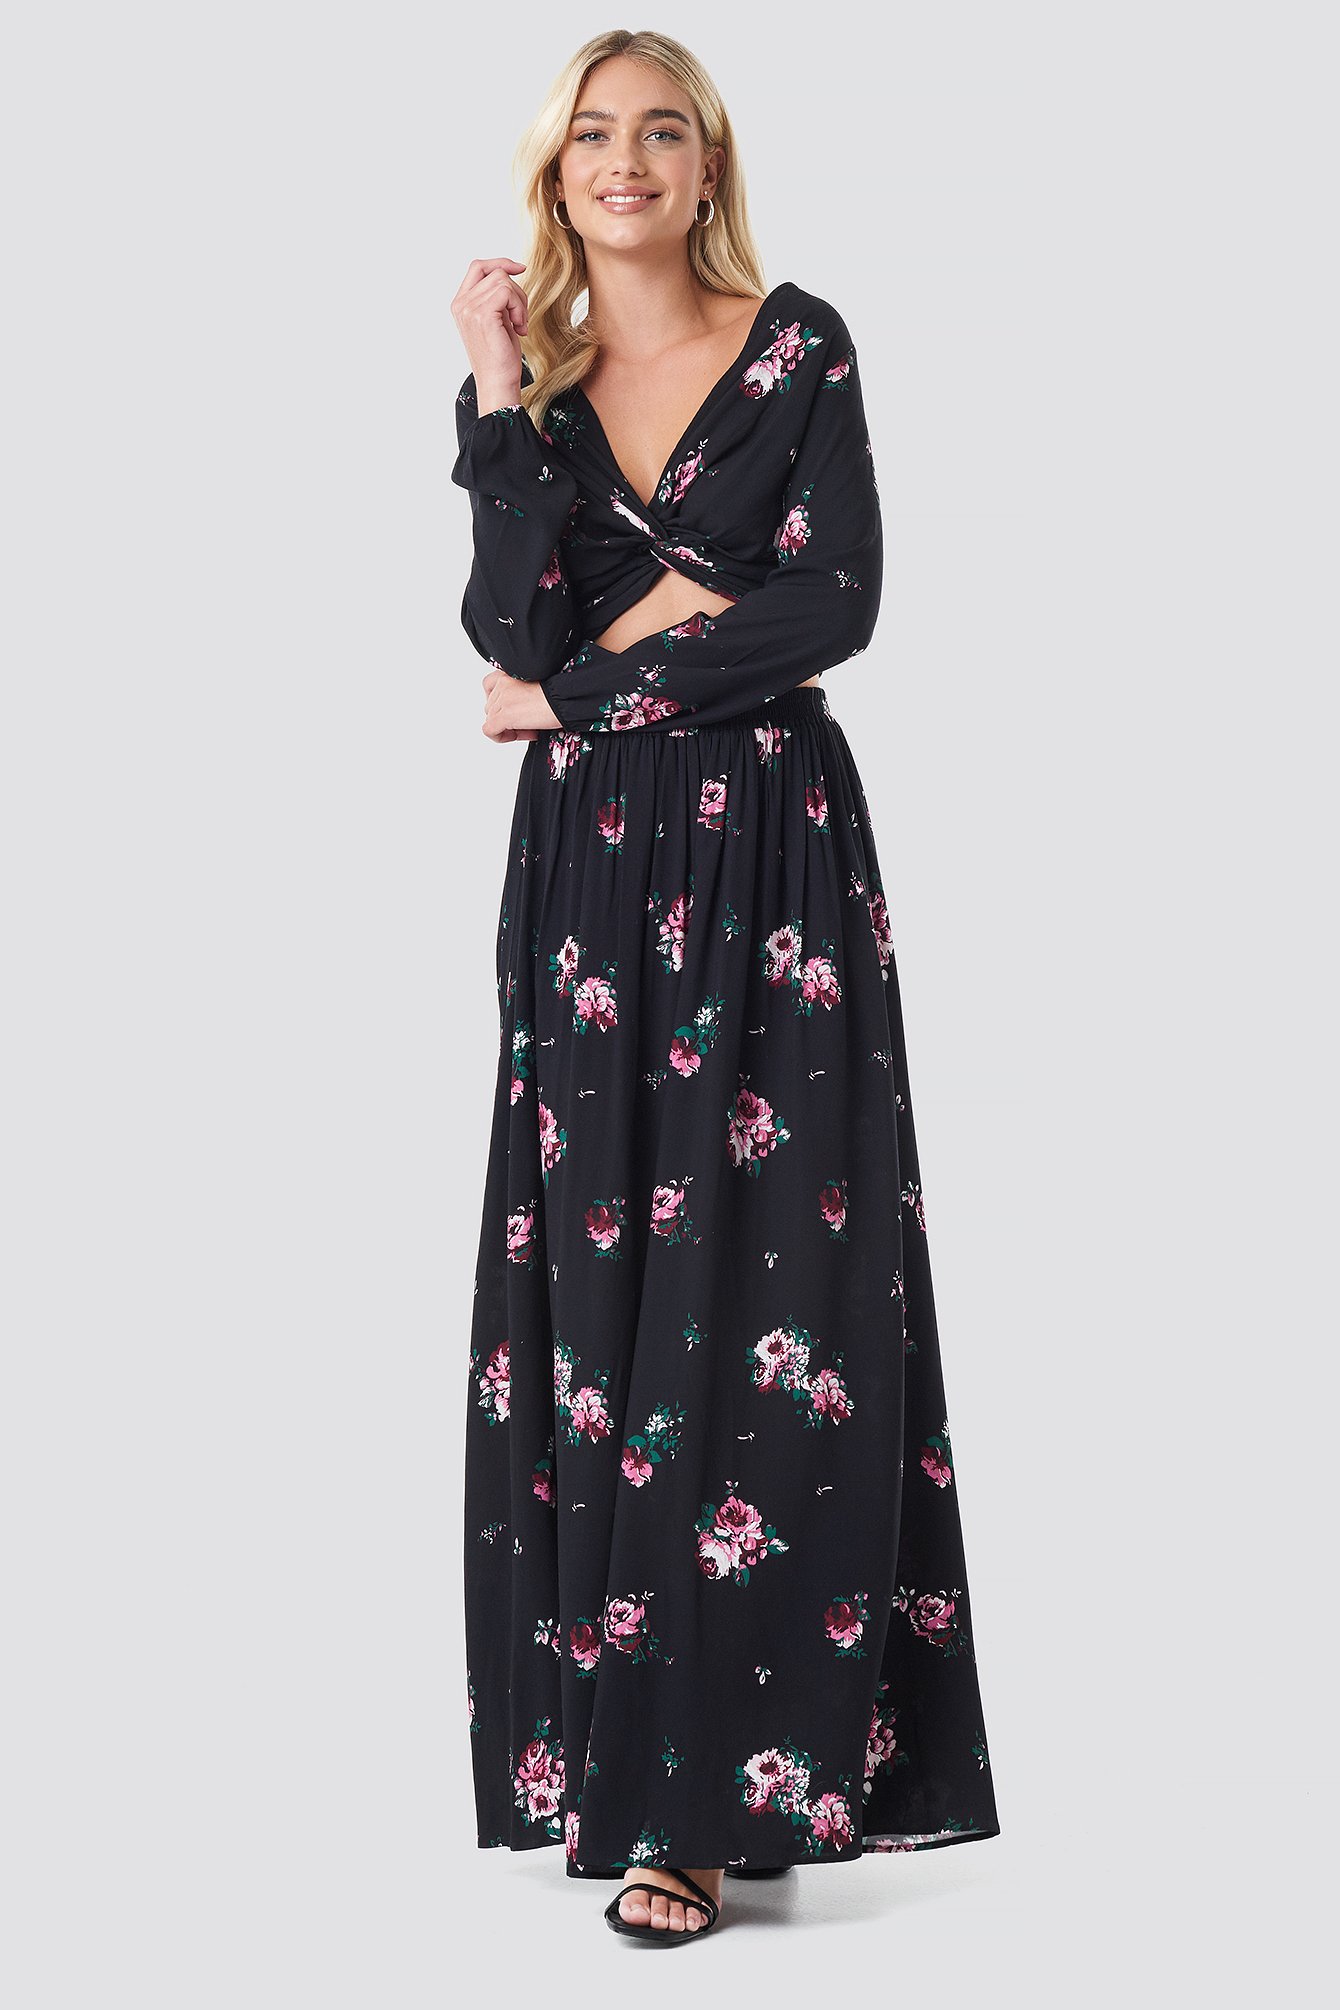 Black Floral NA-KD Boho Co-ord Floral Maxi Skirt